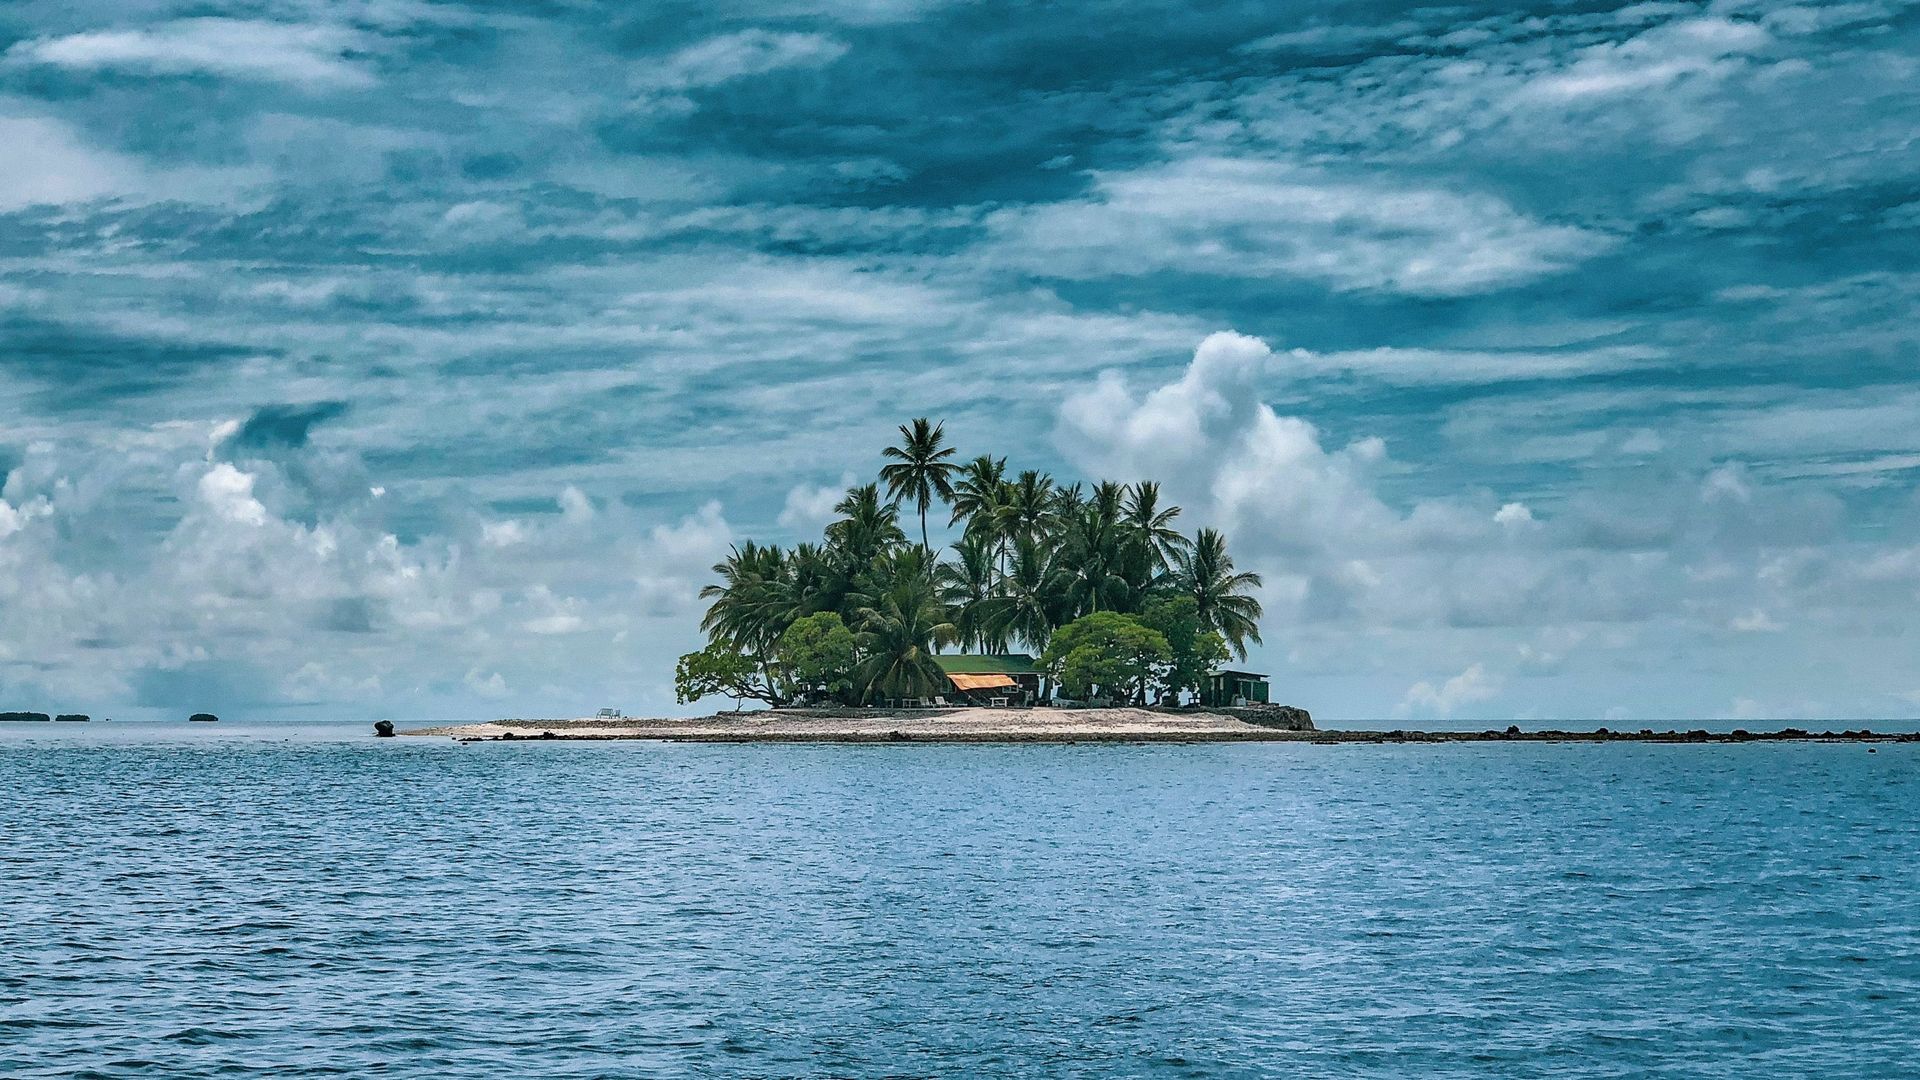 La minute insolite : cette île qui n’existe pas est apparue sur des cartes pendant des centaines d’années